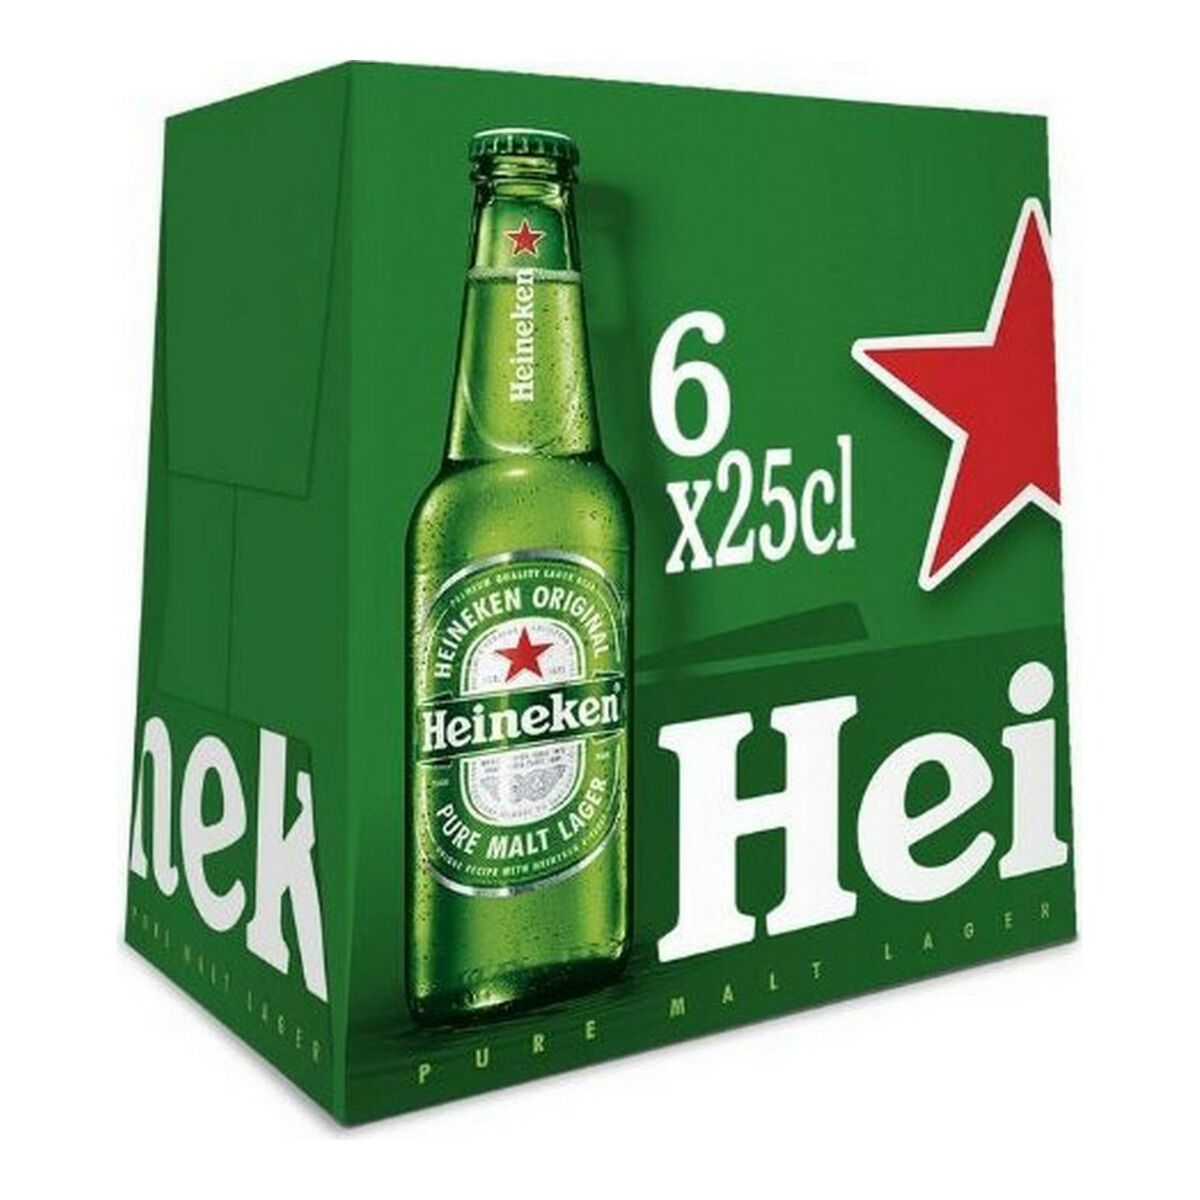 Bière Heineken 6 x 250 ml (6 x 250 ml)